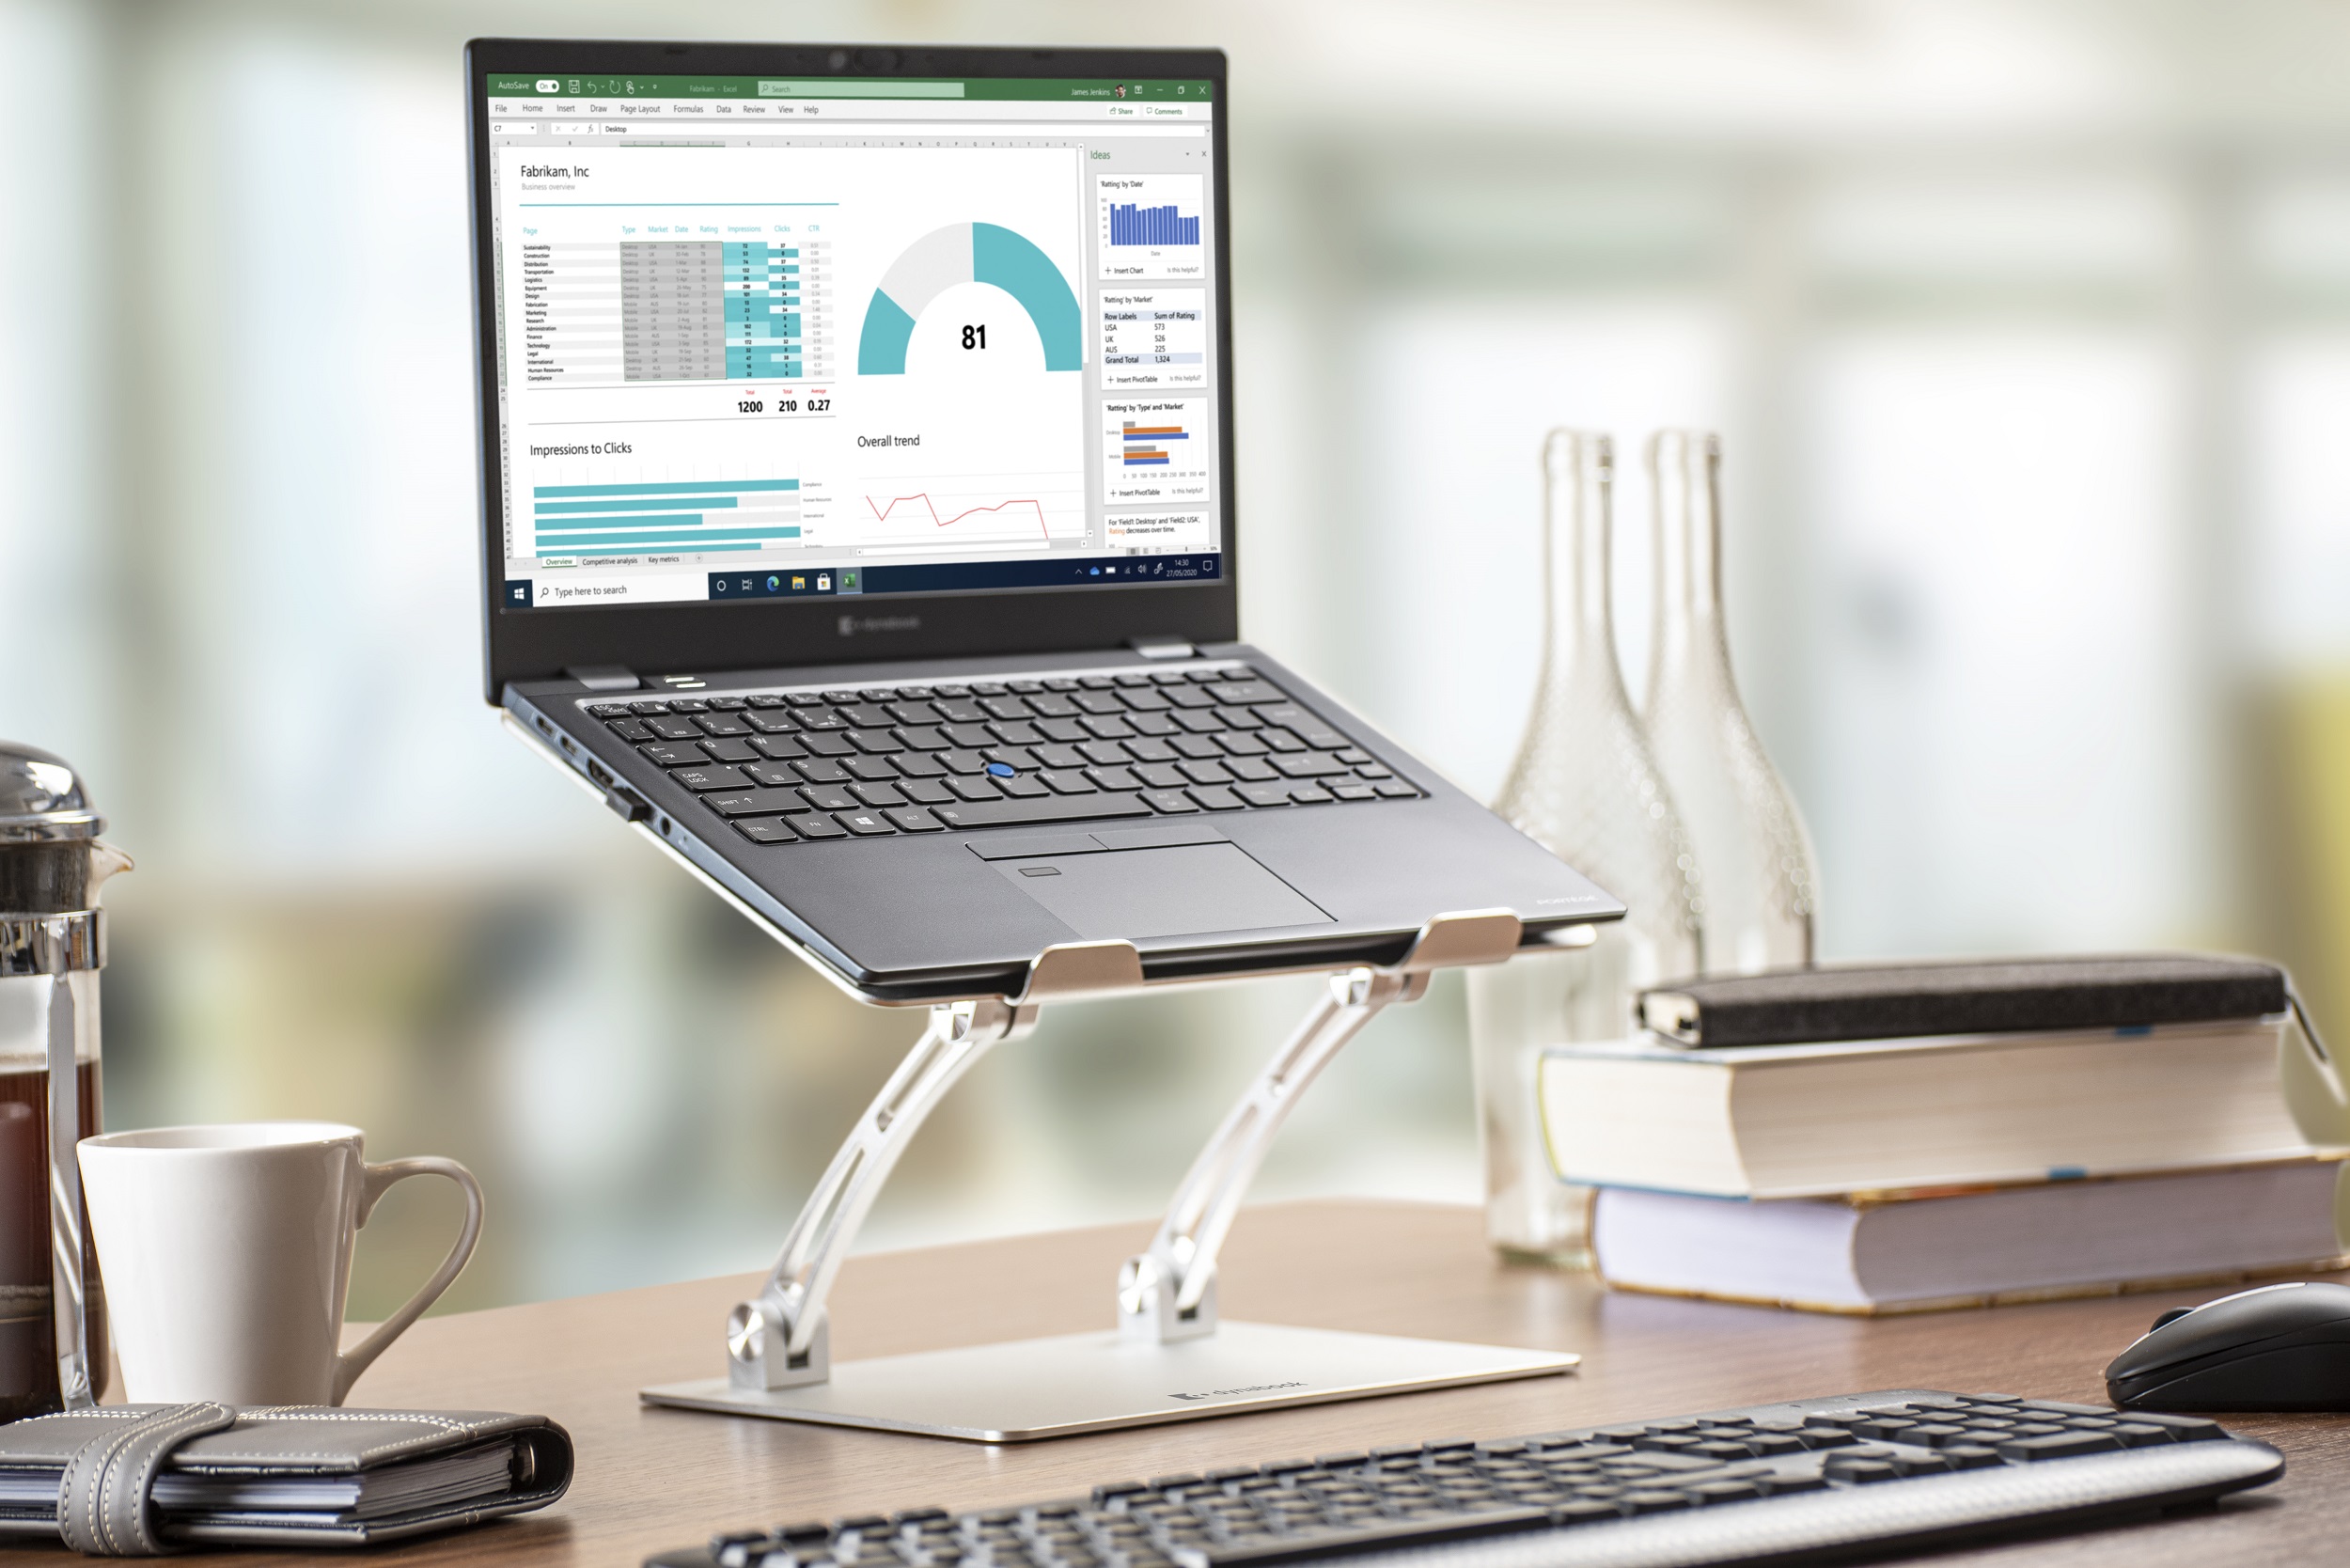 Zu sehen ist ein Notebook, dass auf einem erhöhten Standfuß auf einem Schreibtisch steht. Der Standfuß ermöglicht einen komfortablen Blick auf das Notebook für den Nutzer.